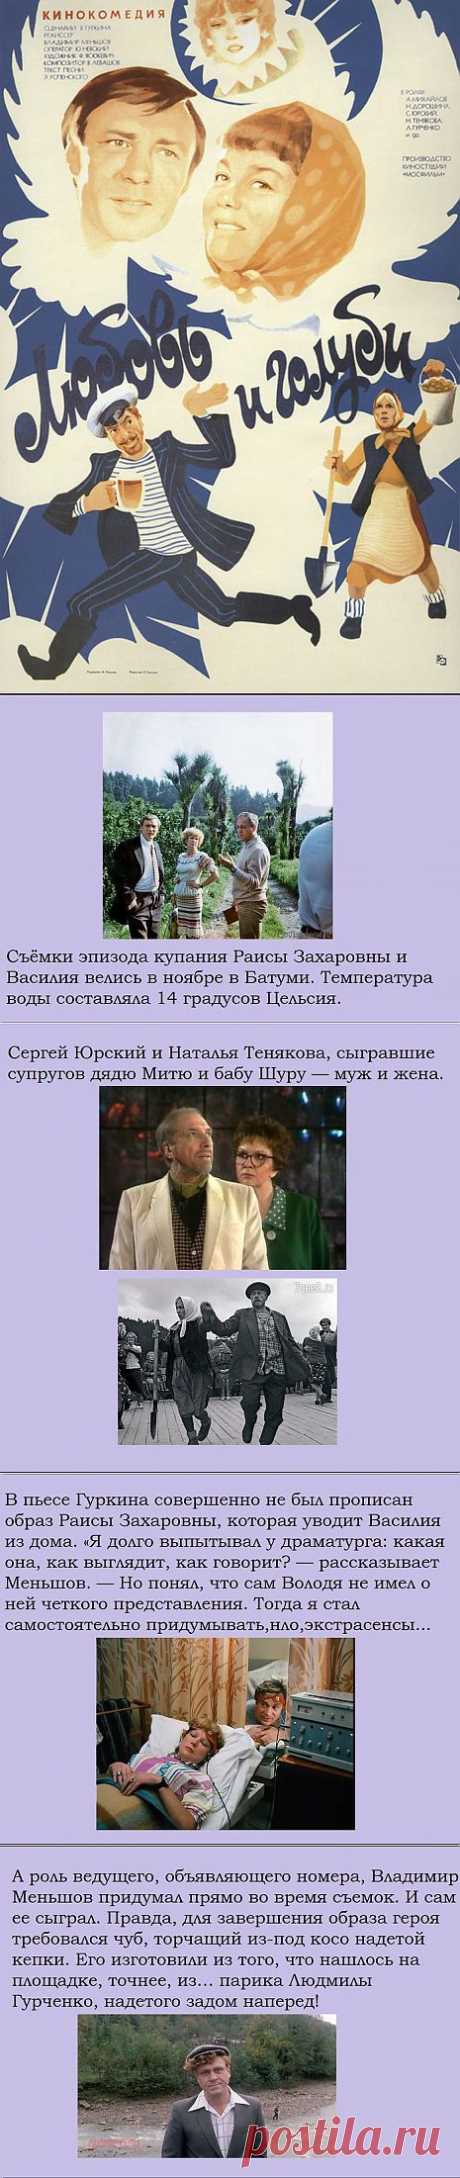 Интересные факты о советской кинокомедии «Любовь и голуби».